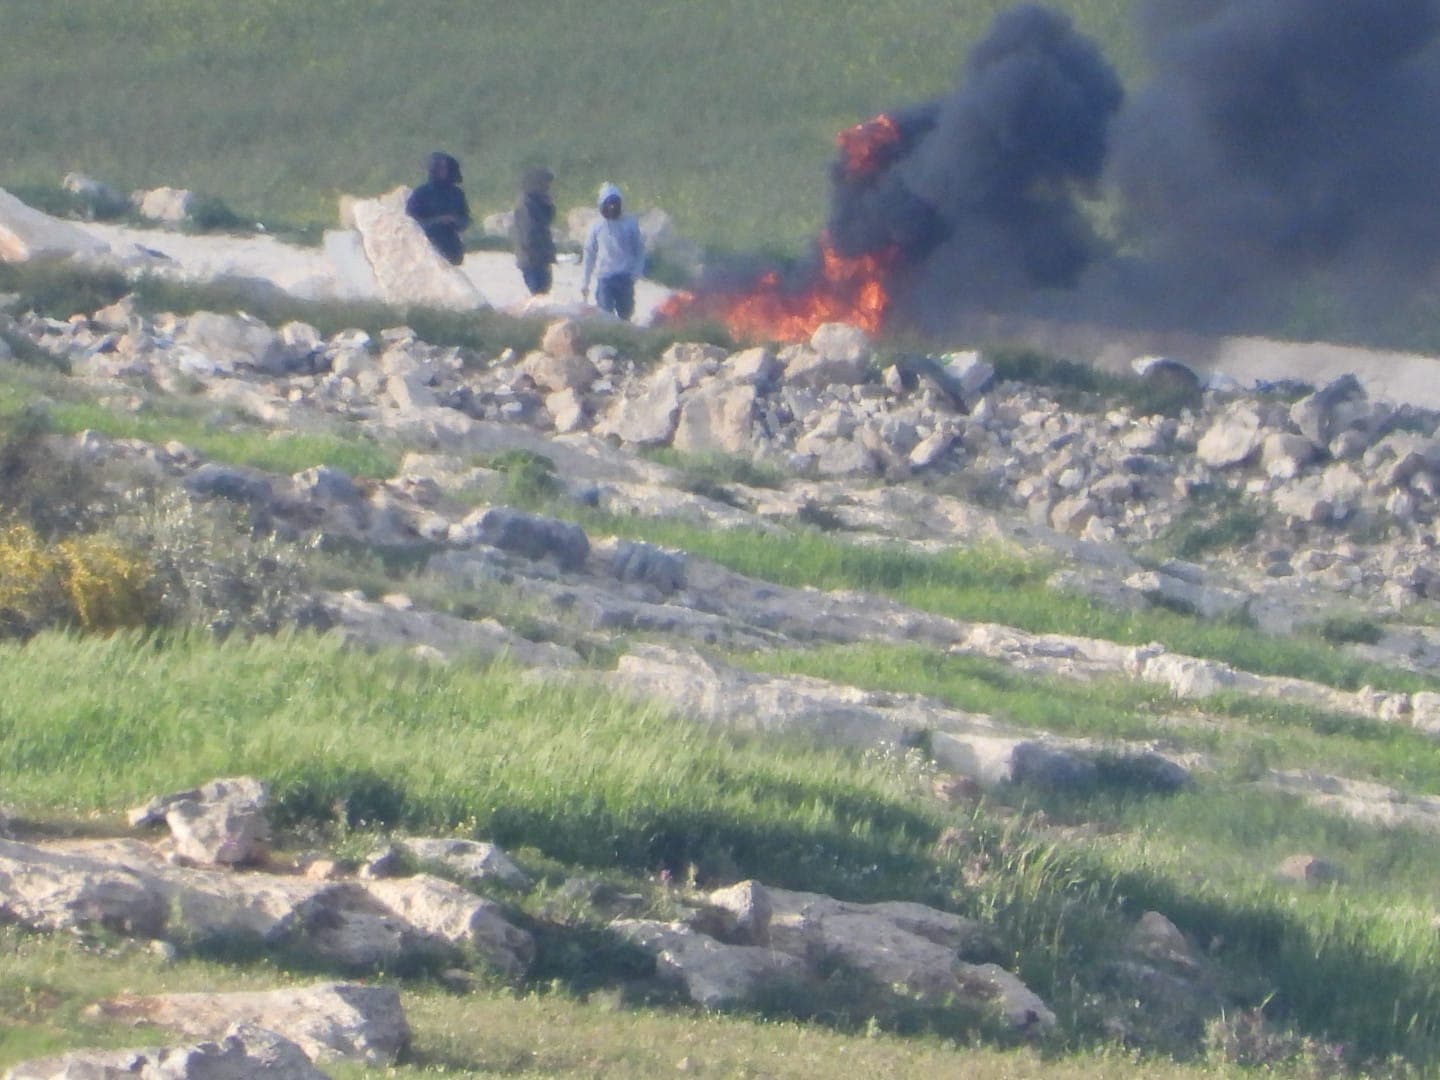 שרפת פסולת לא חוקית באזור לכיש (צילום: באדיבות מטה המאבק &quot;שואפים לנשום אוויר נקי&quot;)